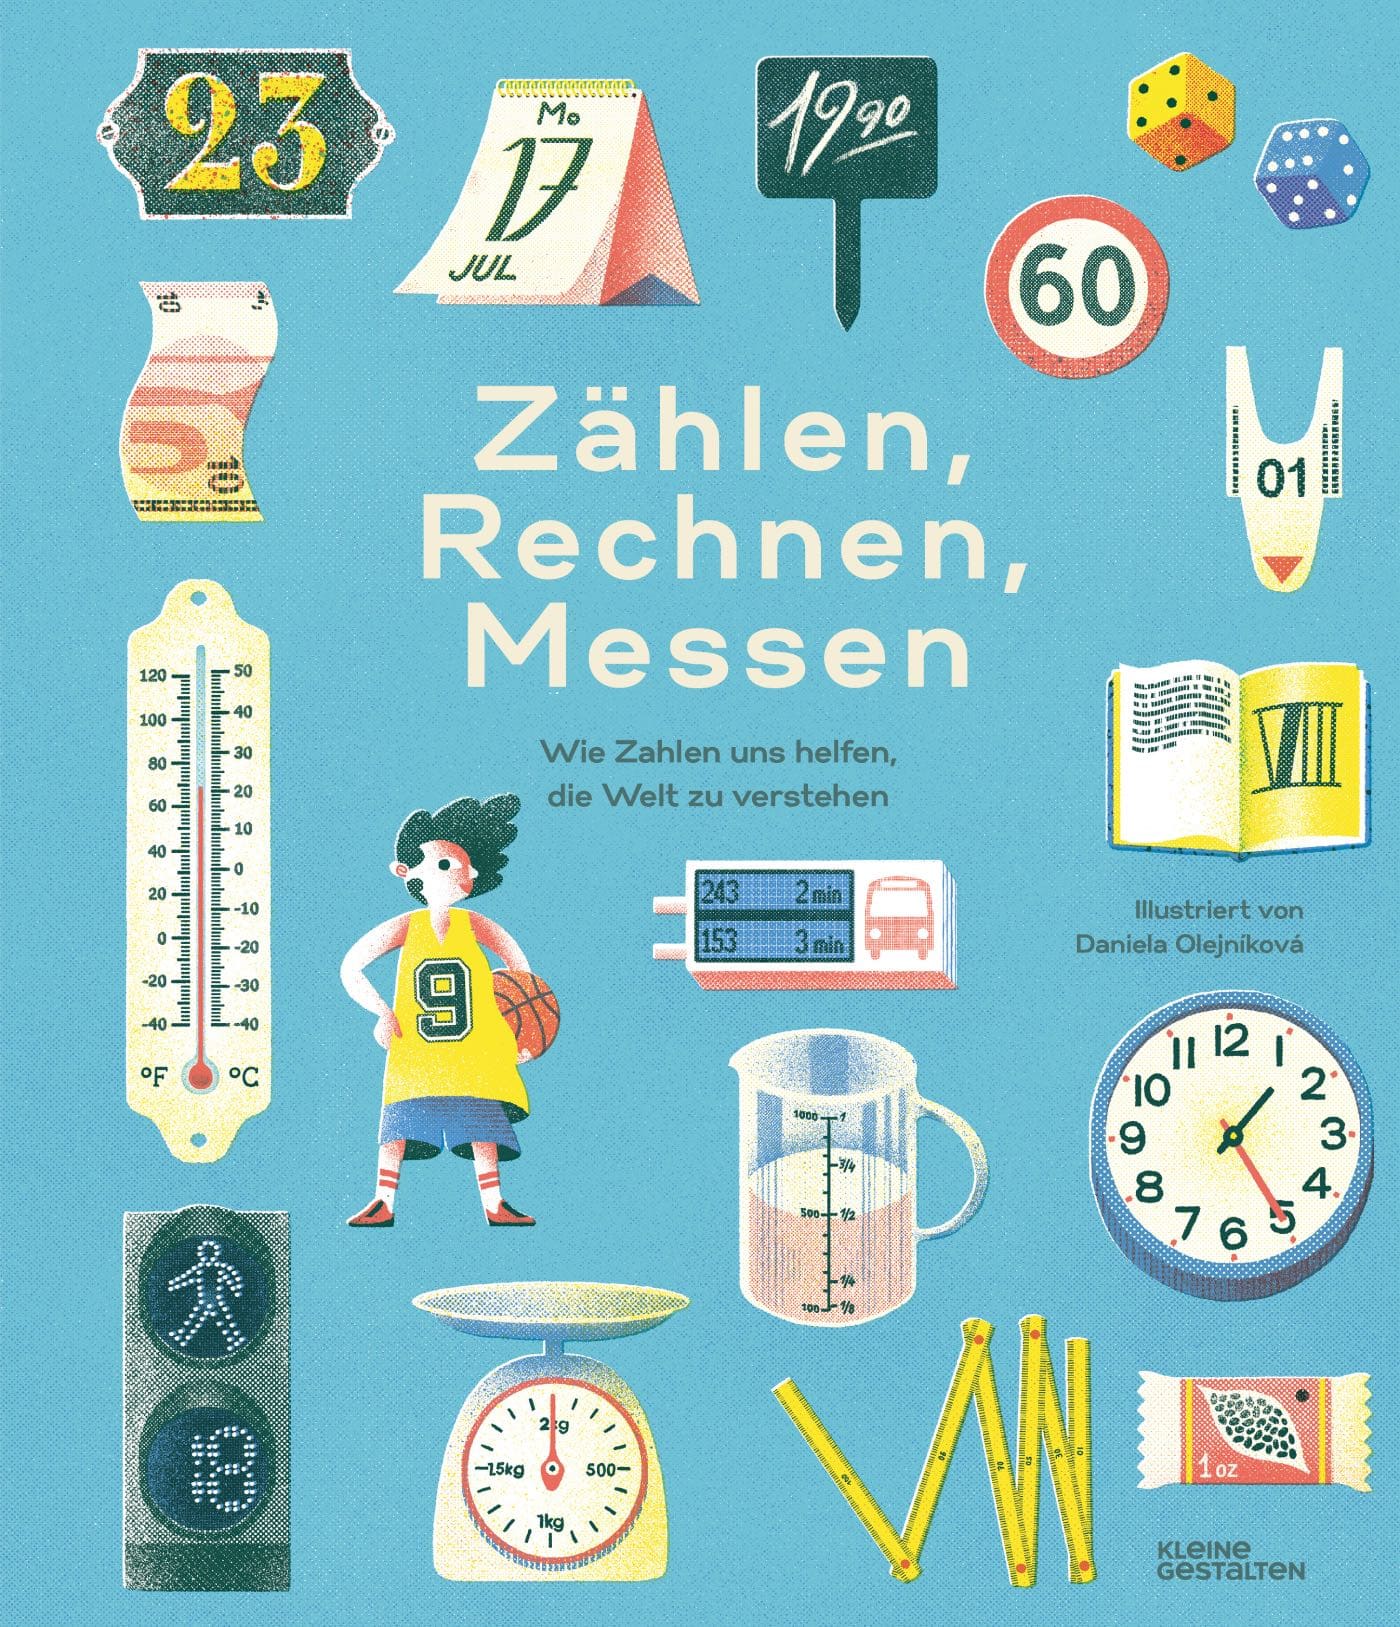 Nominierungen Deutscher Jugendliteraturpreis 2021, nominiertes Sachbuch für Kinder: Zählen, Rechnen, Messen // HIMBEER